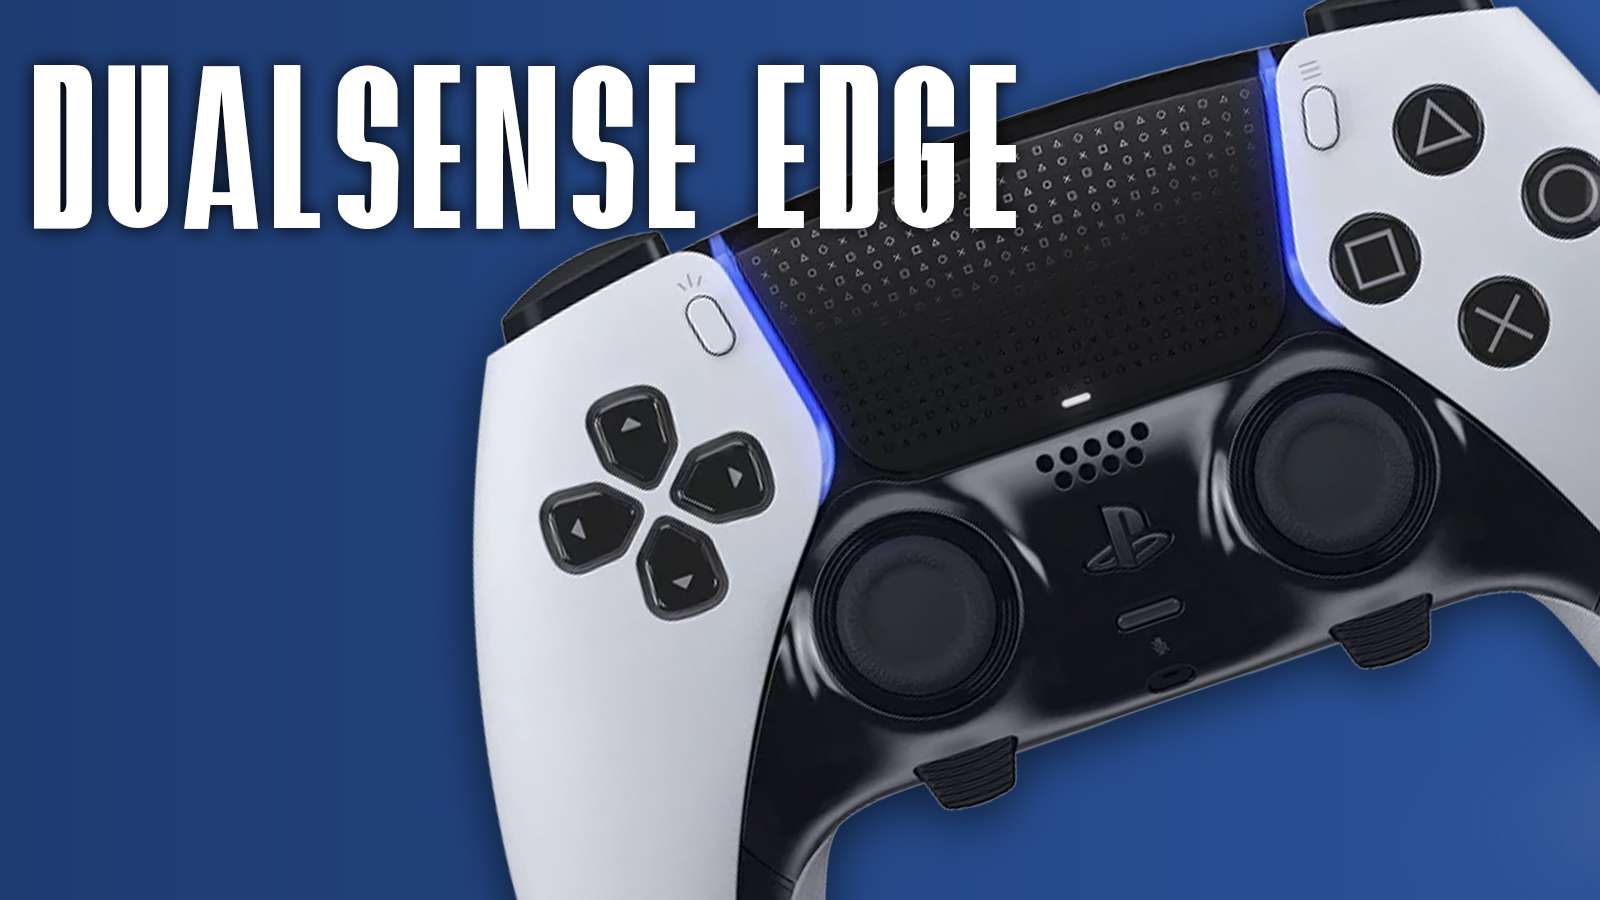 DualSenseEdge デュアルセンスエッジ - テレビゲーム